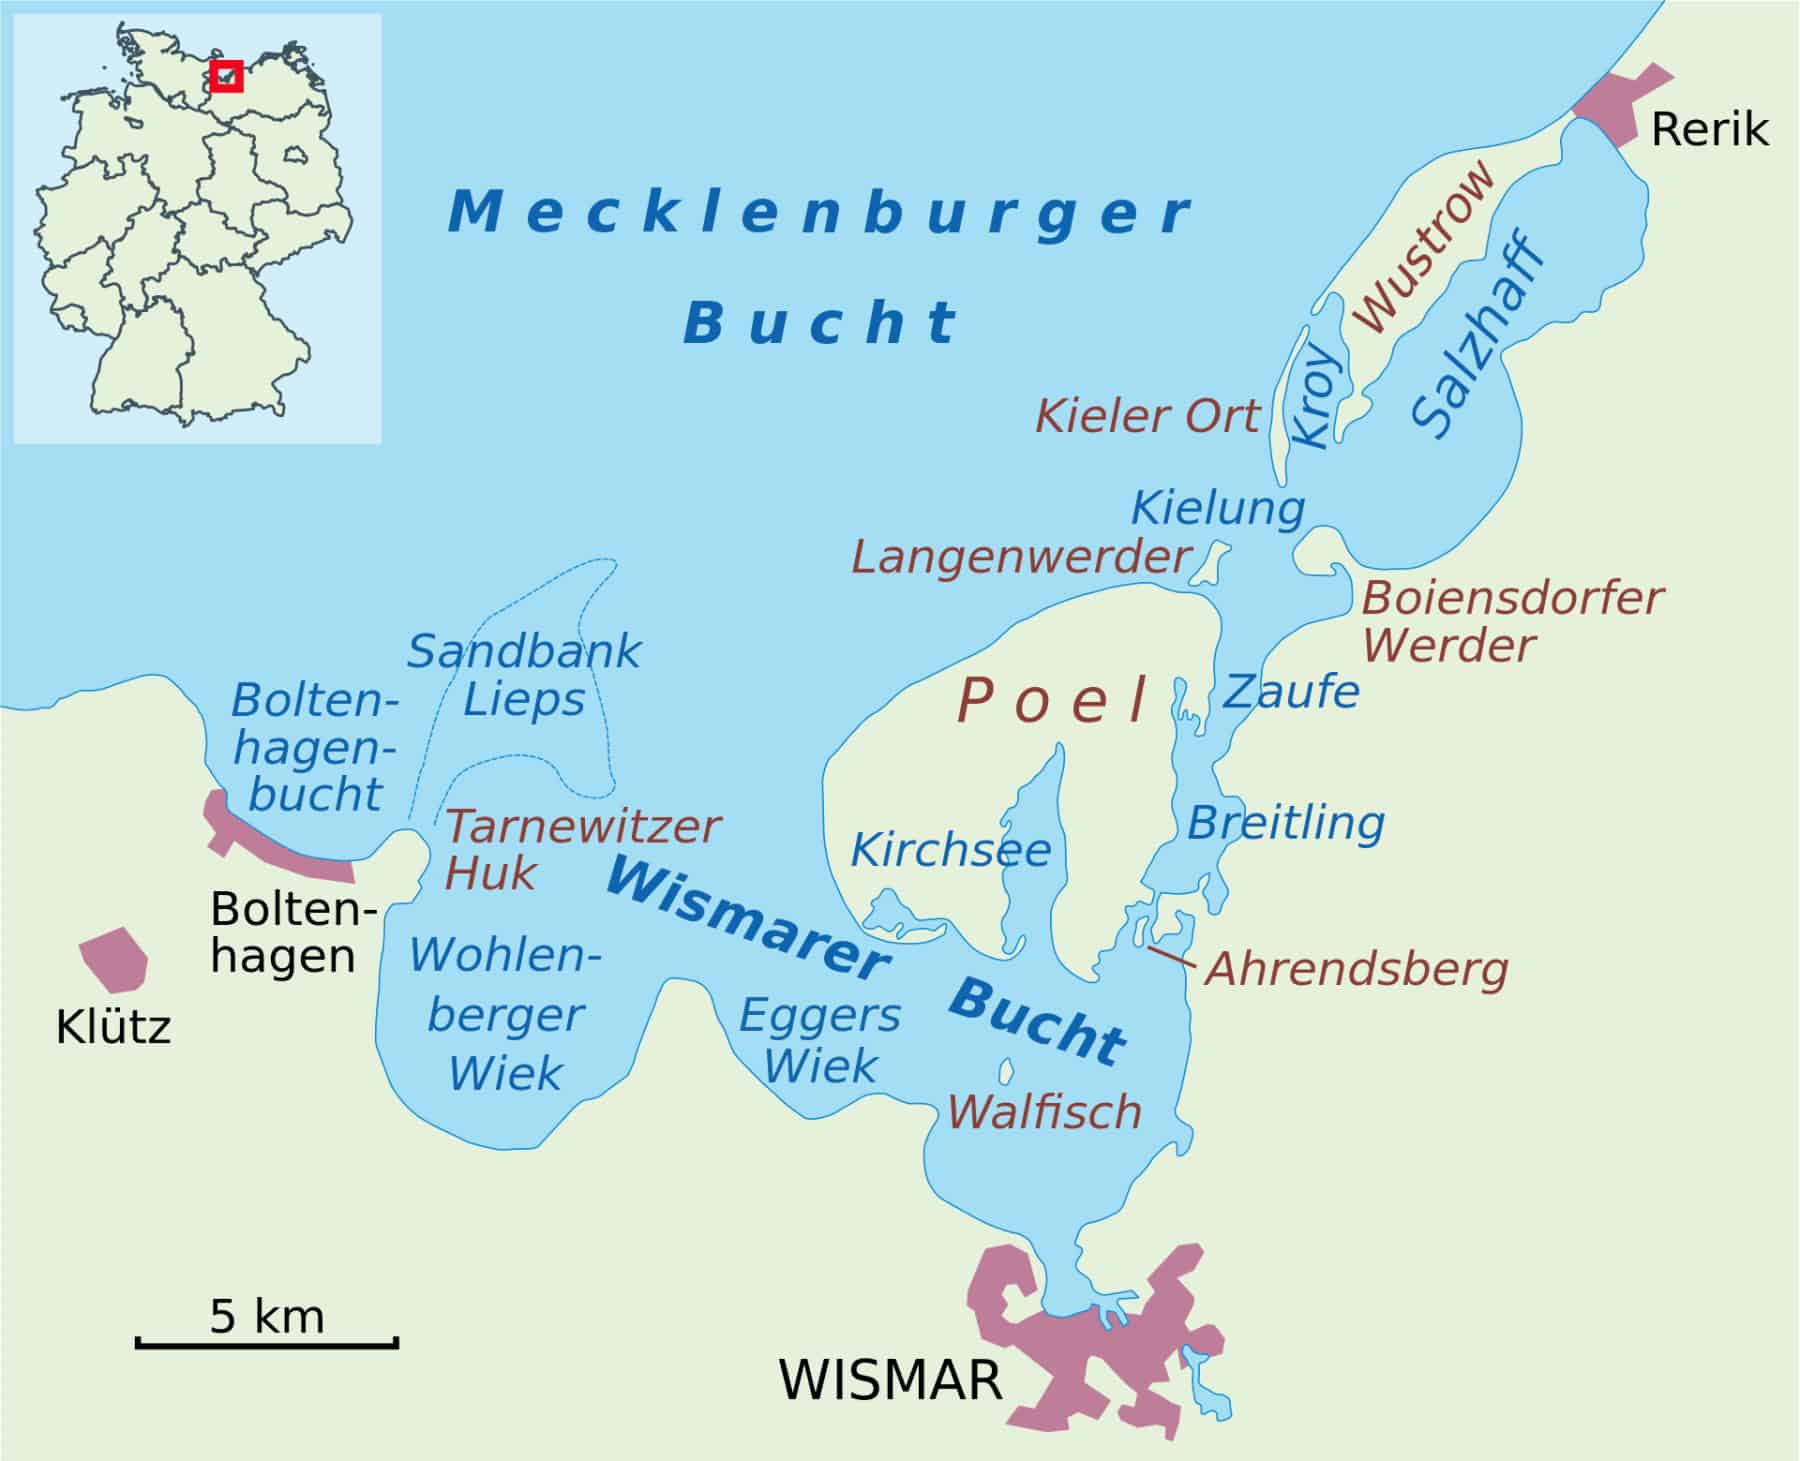 Die Wohlenberger Wiek als Teil der Wismarer Bucht